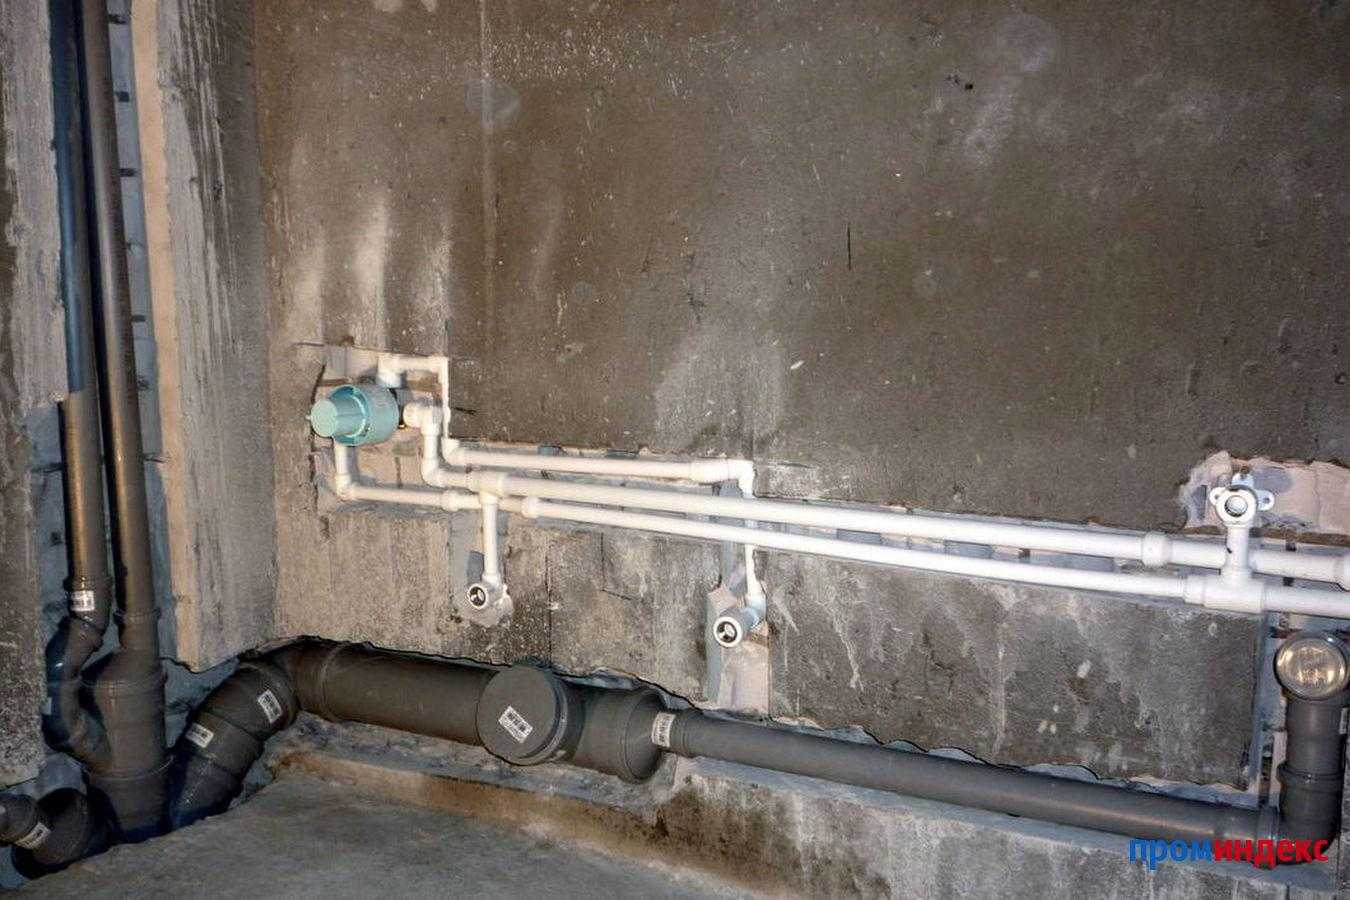 Как спрятать водопроводные и канализационные трубы в ванной под плитку